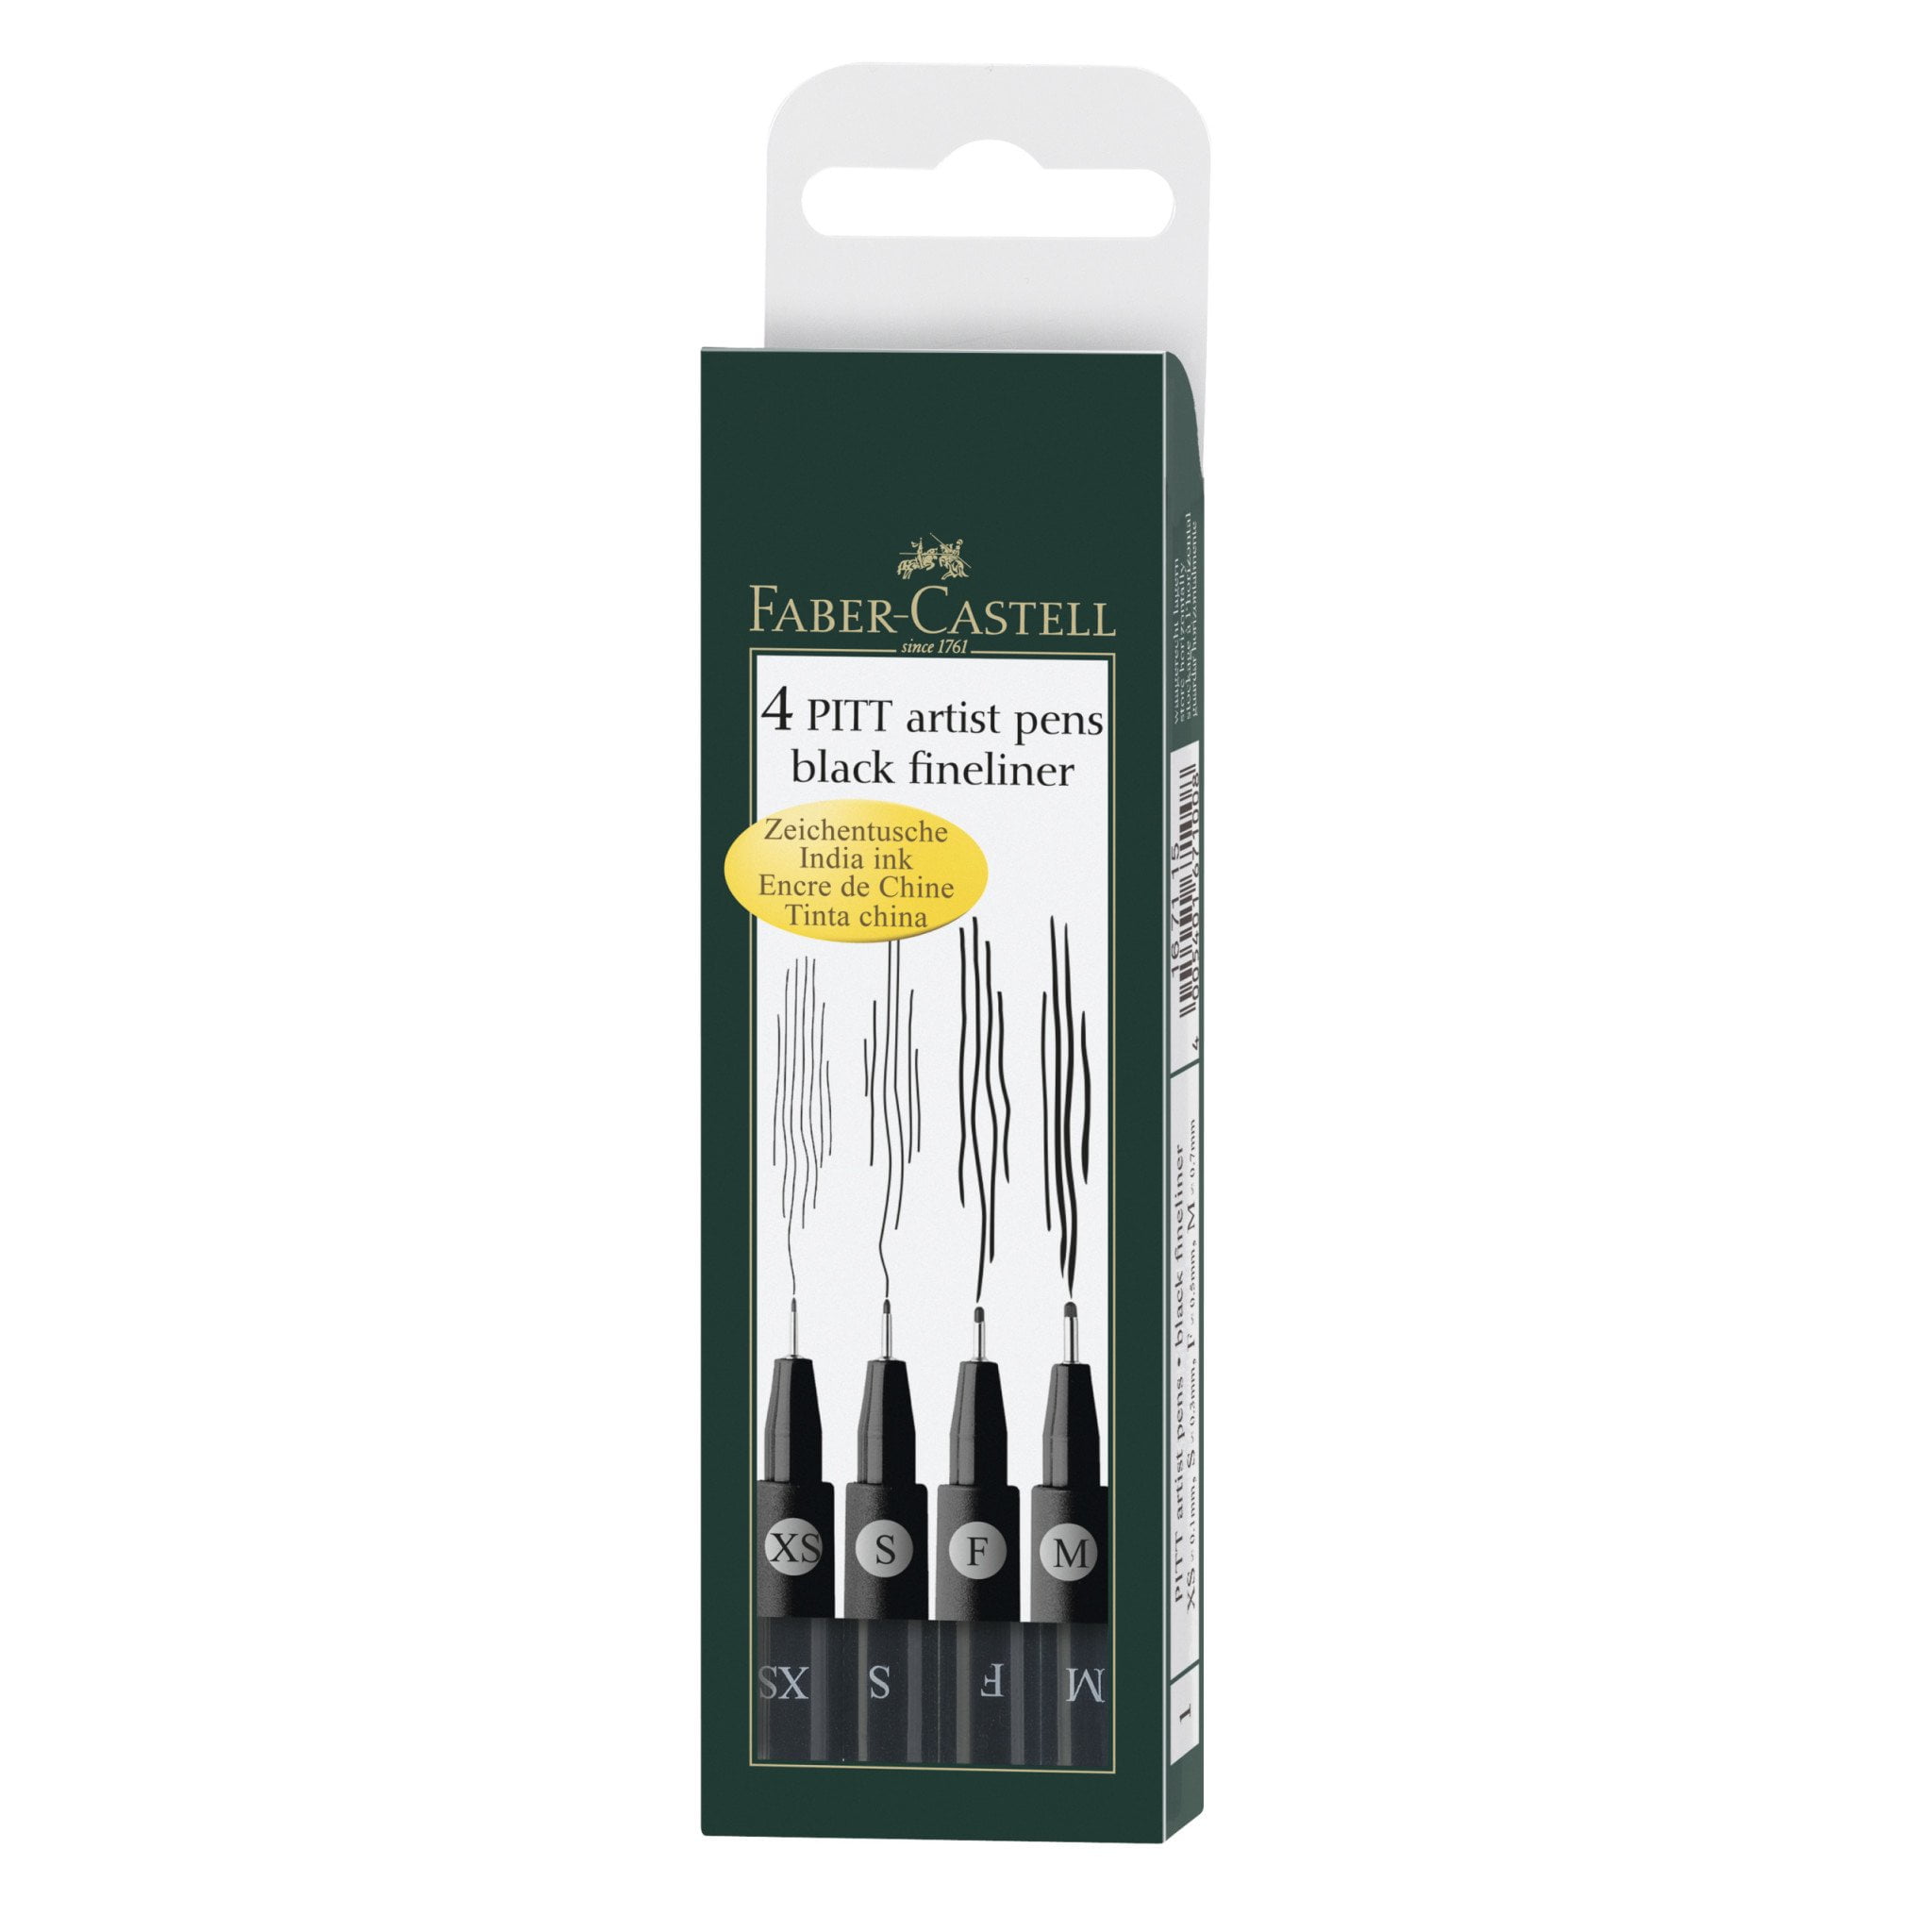 Faber-Castell, PITT Artist Pen Set of 4, Extra Superfine, & Black Walmart.com